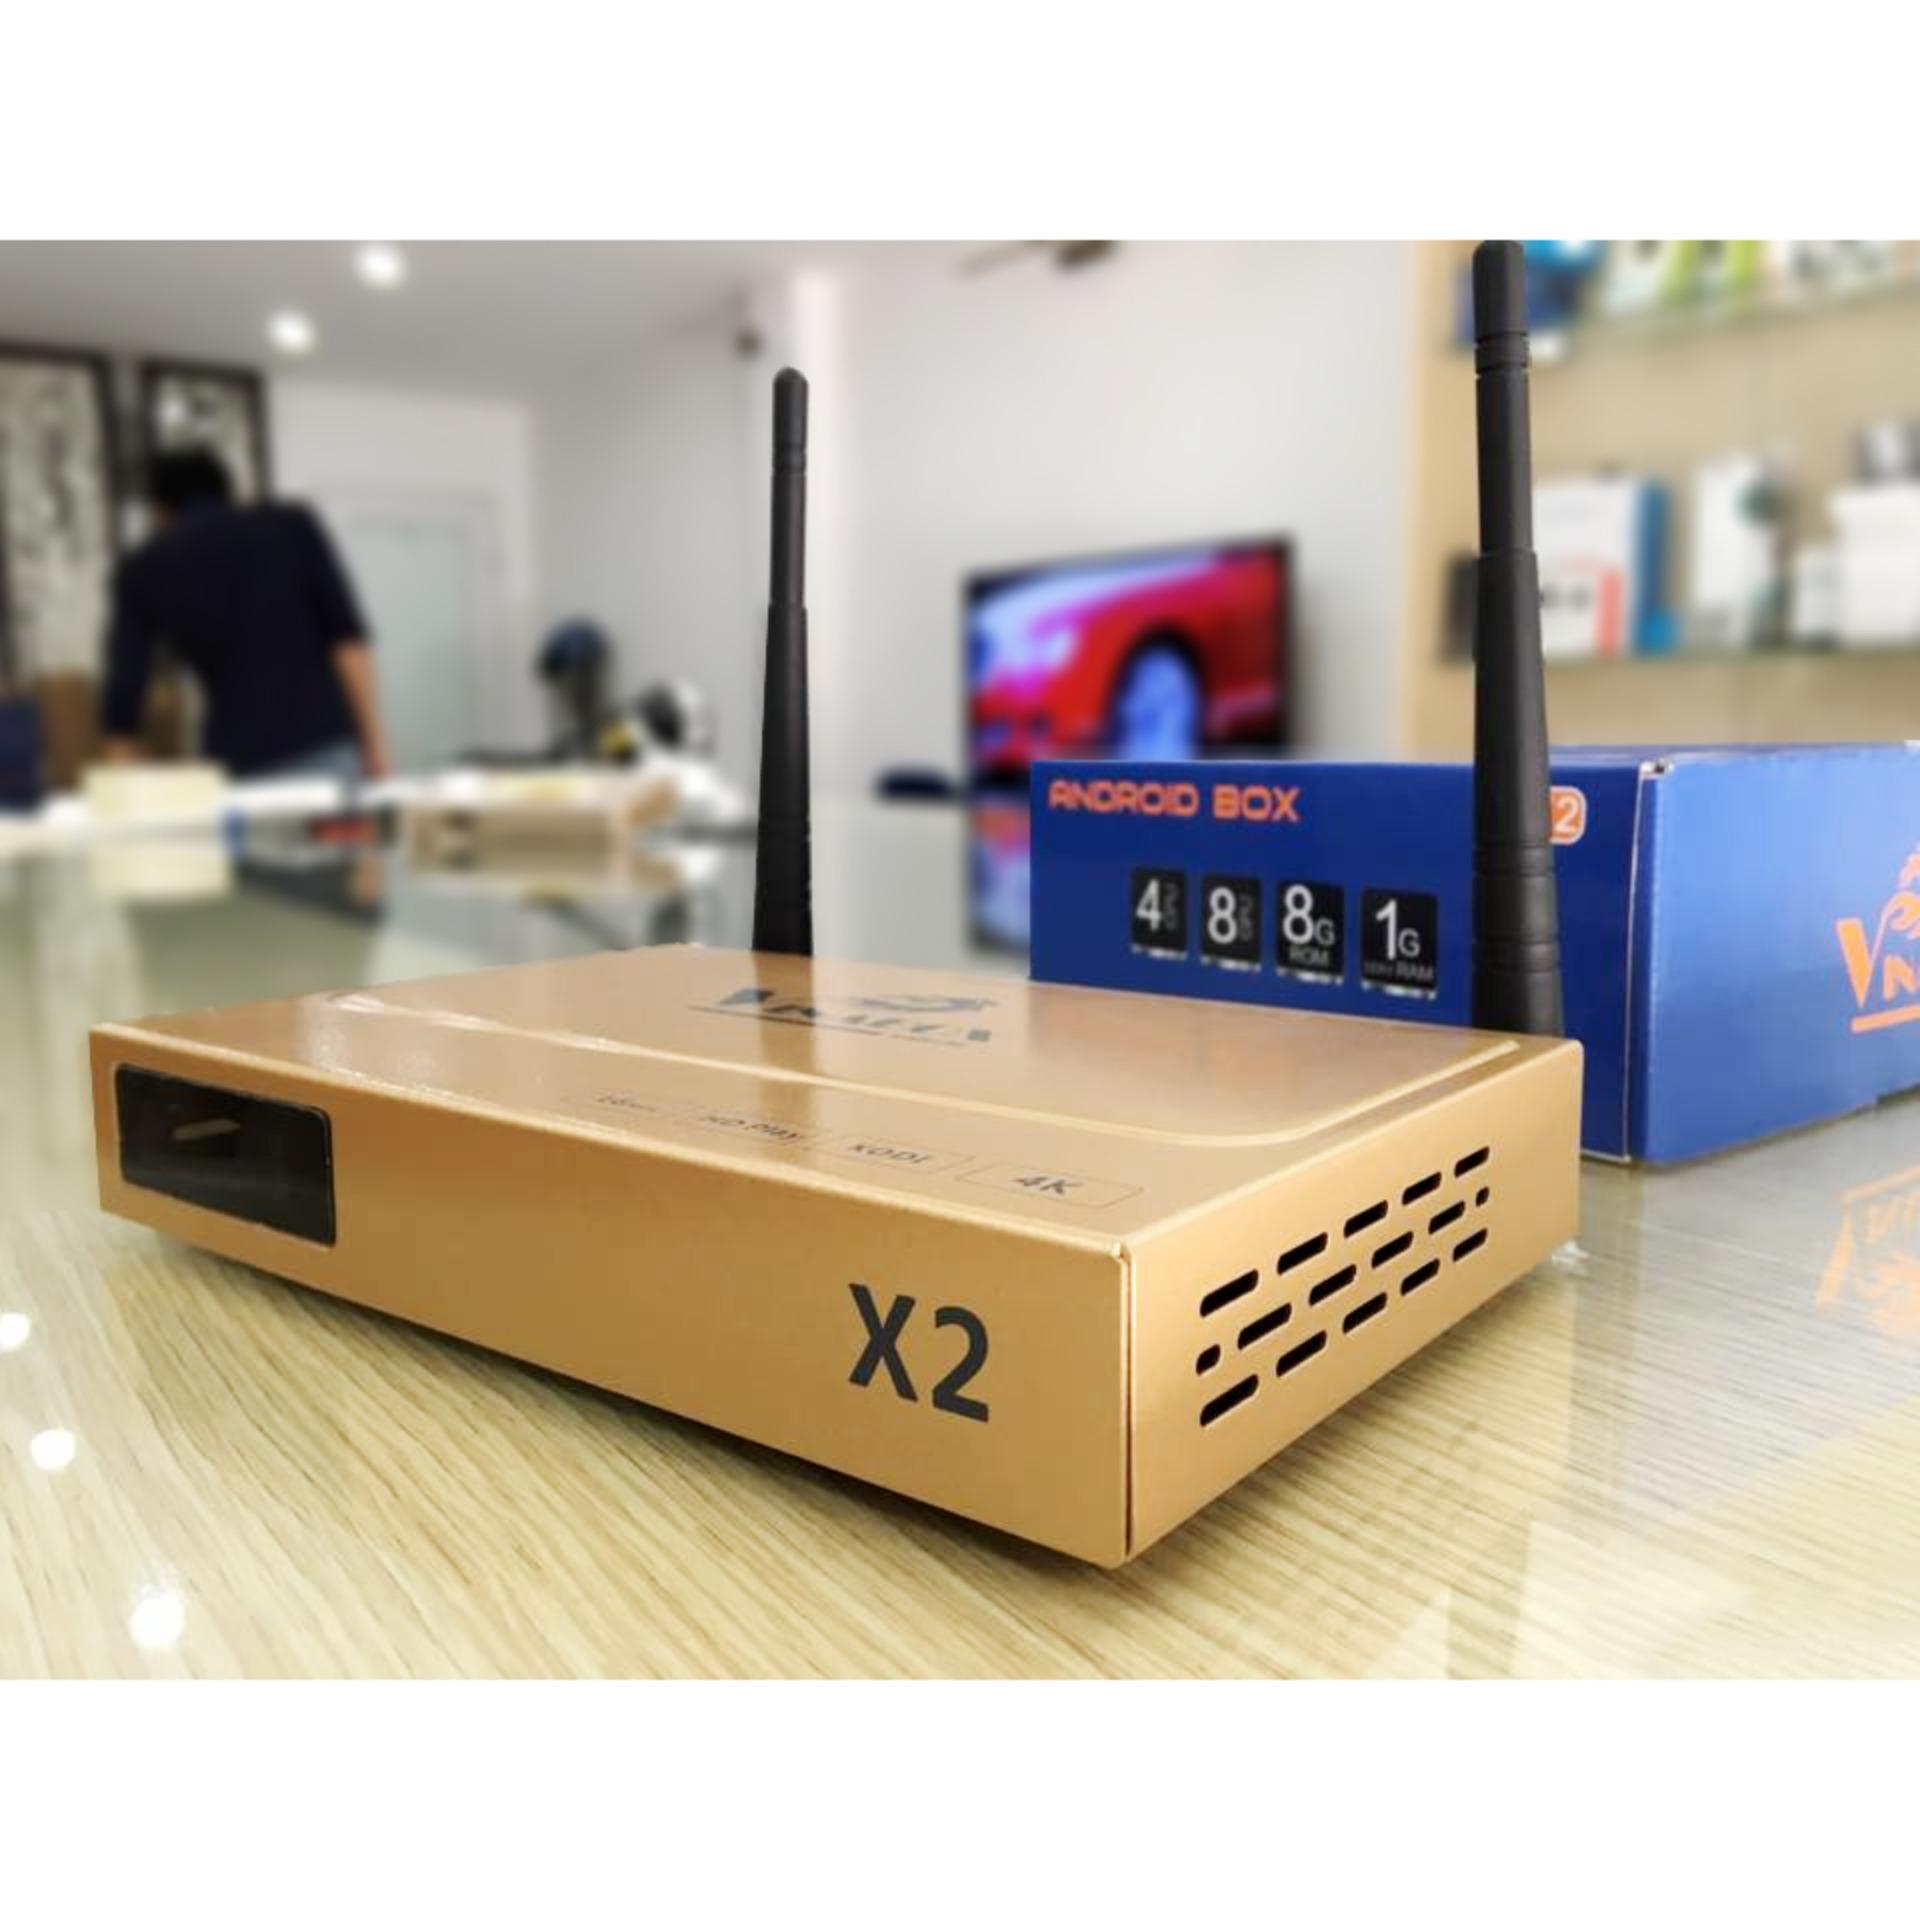 Android tivi box Vinabox X2 - Ram 1GB - Rom 8 GB ( Giá rẻ cho mọi người Việt )